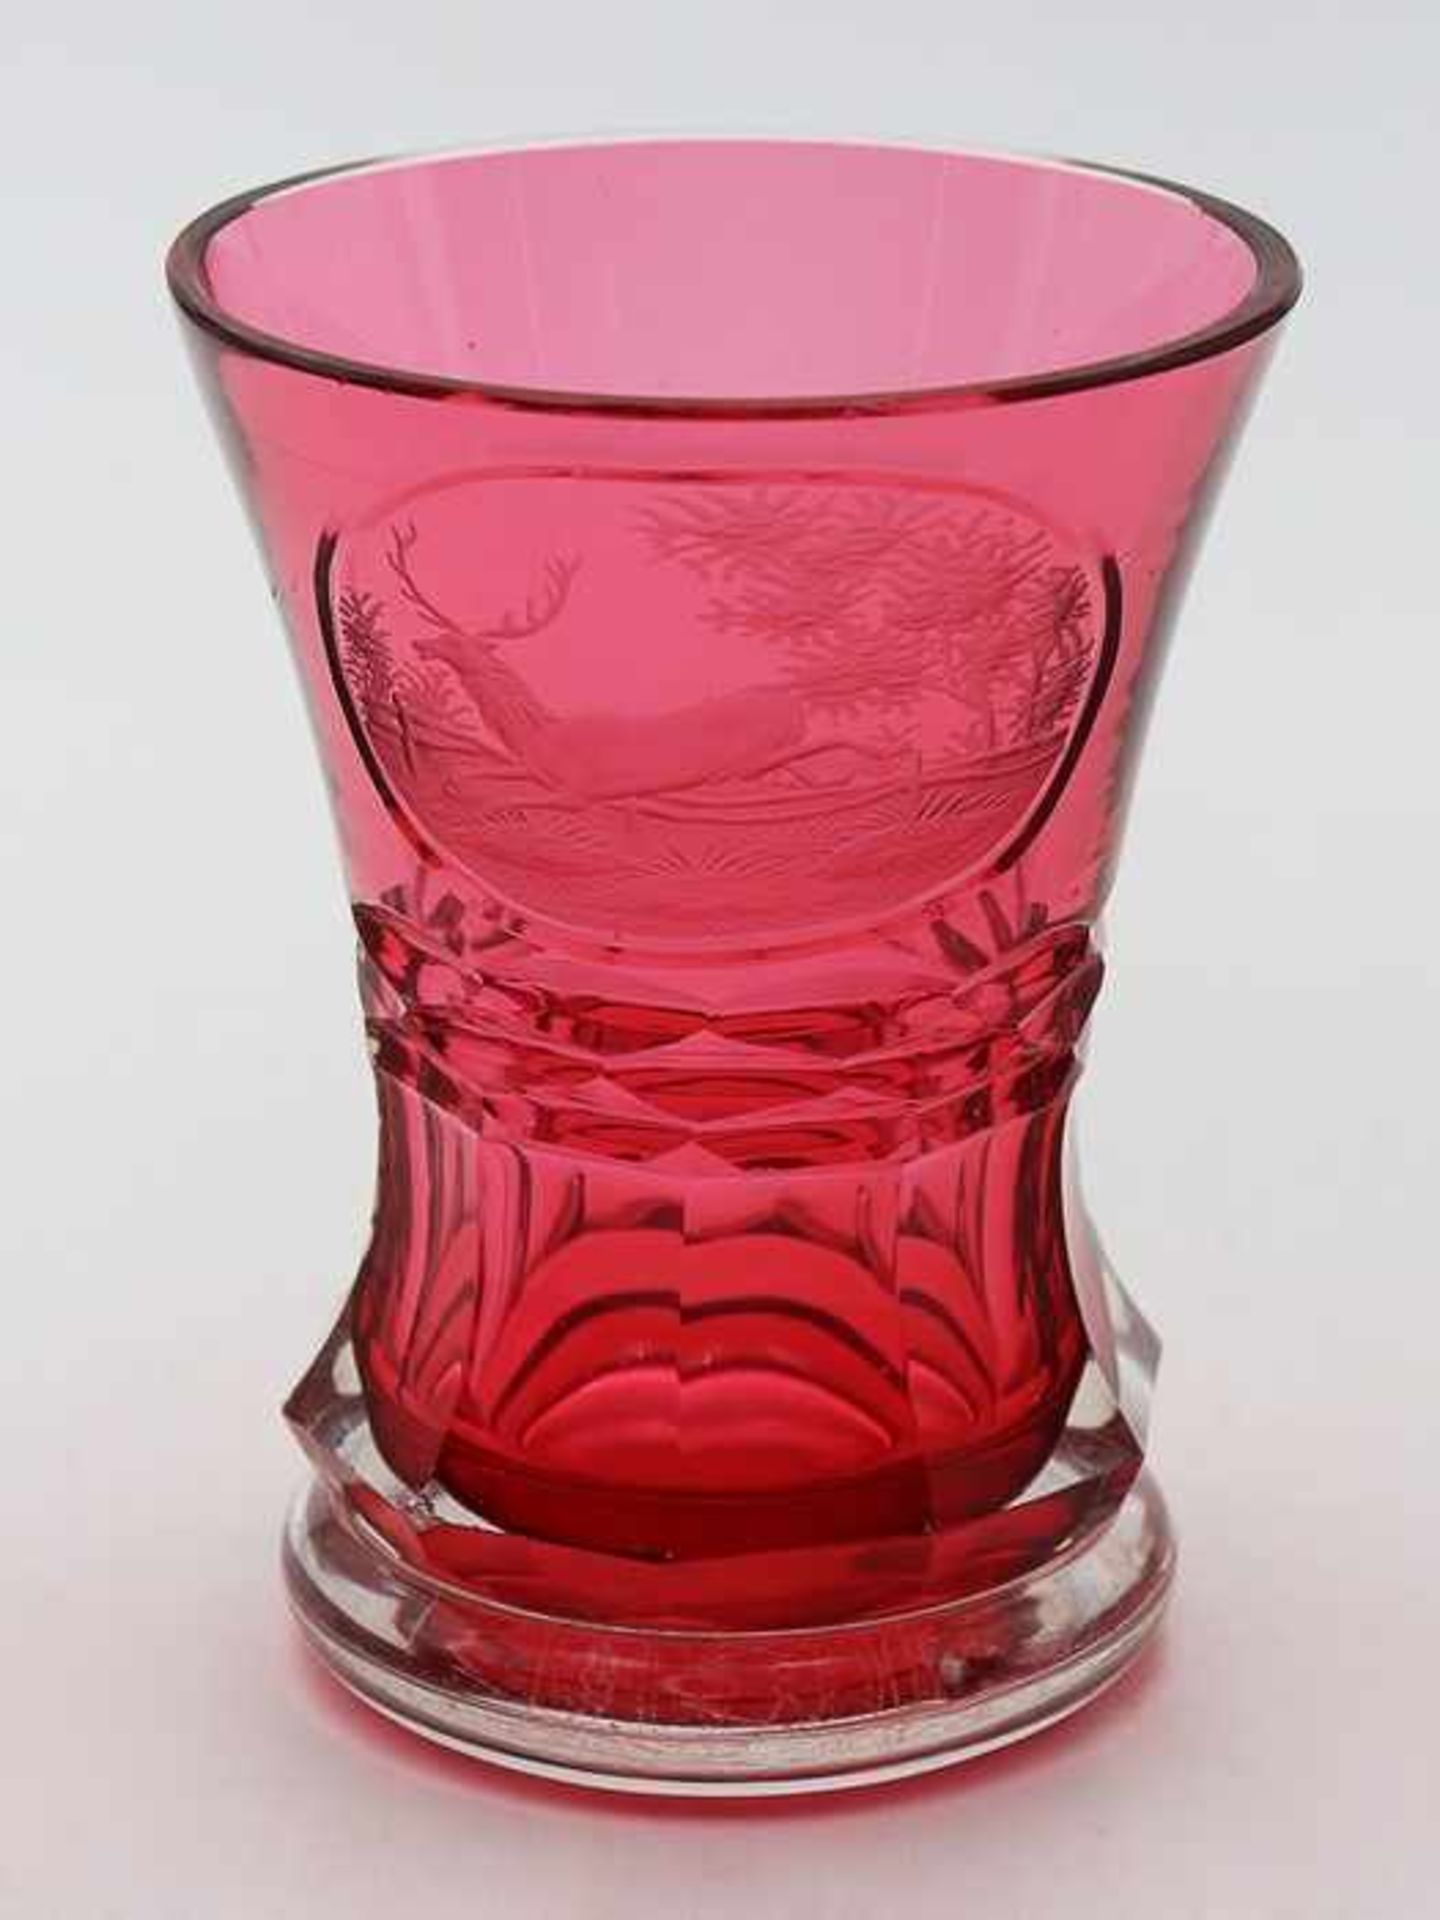 Fußbecher19. Jh., Biedermeier, farbloses Glas, rosafarben unterfangen, runder wulstiger Stand, - Bild 2 aus 2